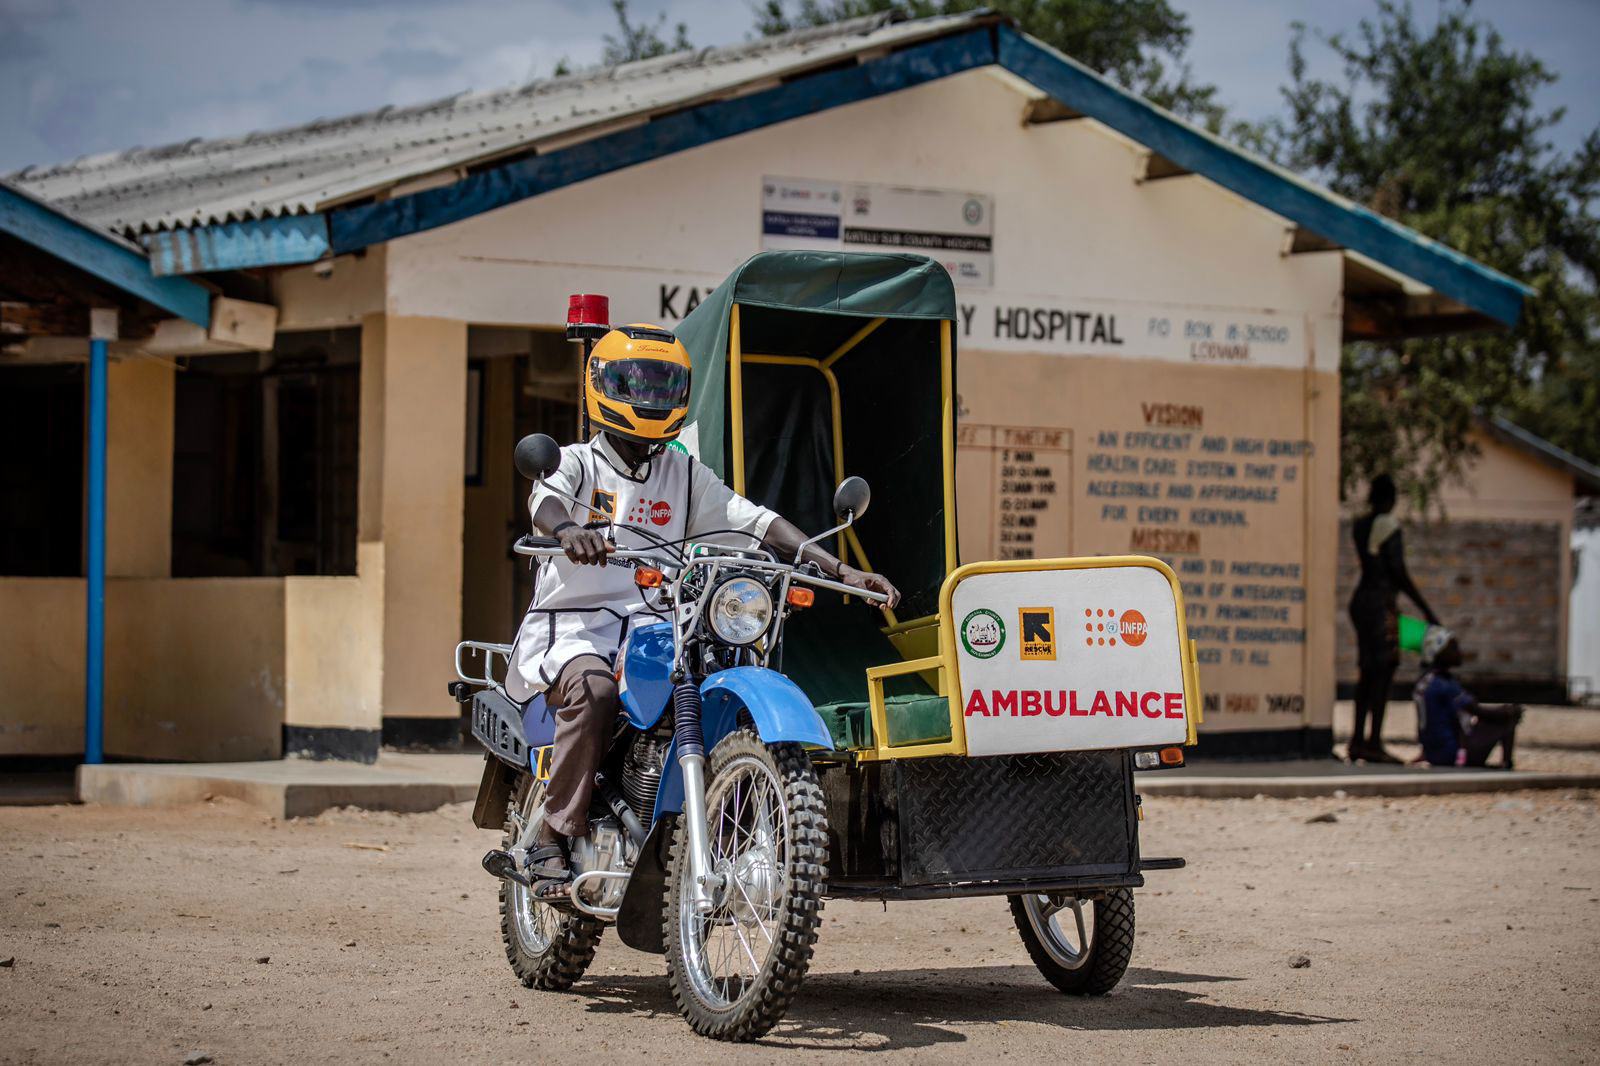 خشکسالی مداوم دسترسی به خدمات بهداشتی ضروری را برای زنان در شهرستان تورکانا، کنیا سخت‌تر کرده است - وضعیت خطرناکی که آمبولانس موتورسیکلت سازمان ملل متحد برای رسیدگی به آن کمک می‌کند.